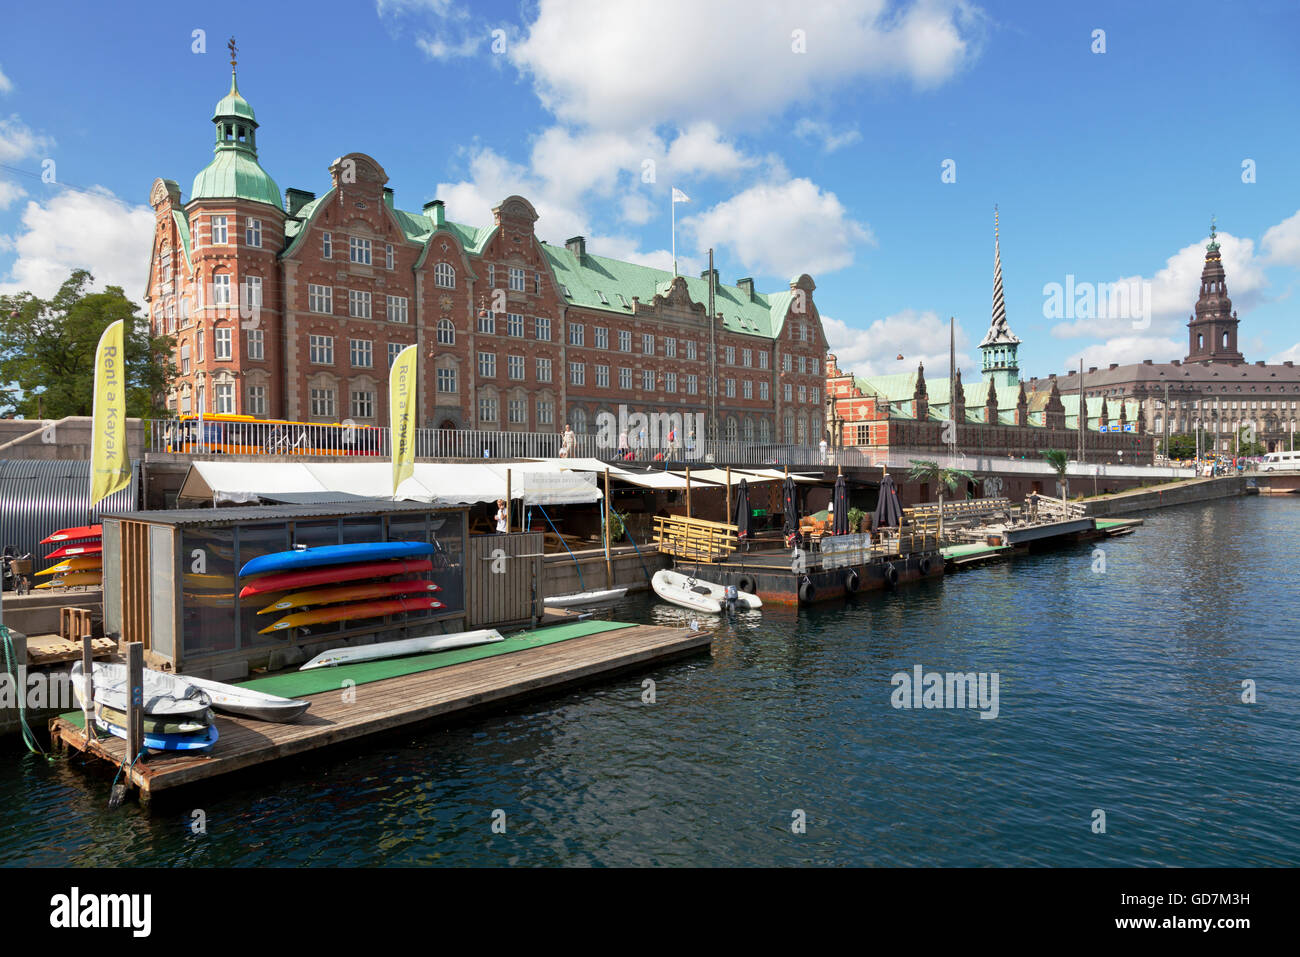 République de kayak dans le port intérieur, dans le centre de Copenhague, location de kayak et un café et un bar au bord de l'eau avec plage flottante et canal tours en kayaks. Banque D'Images